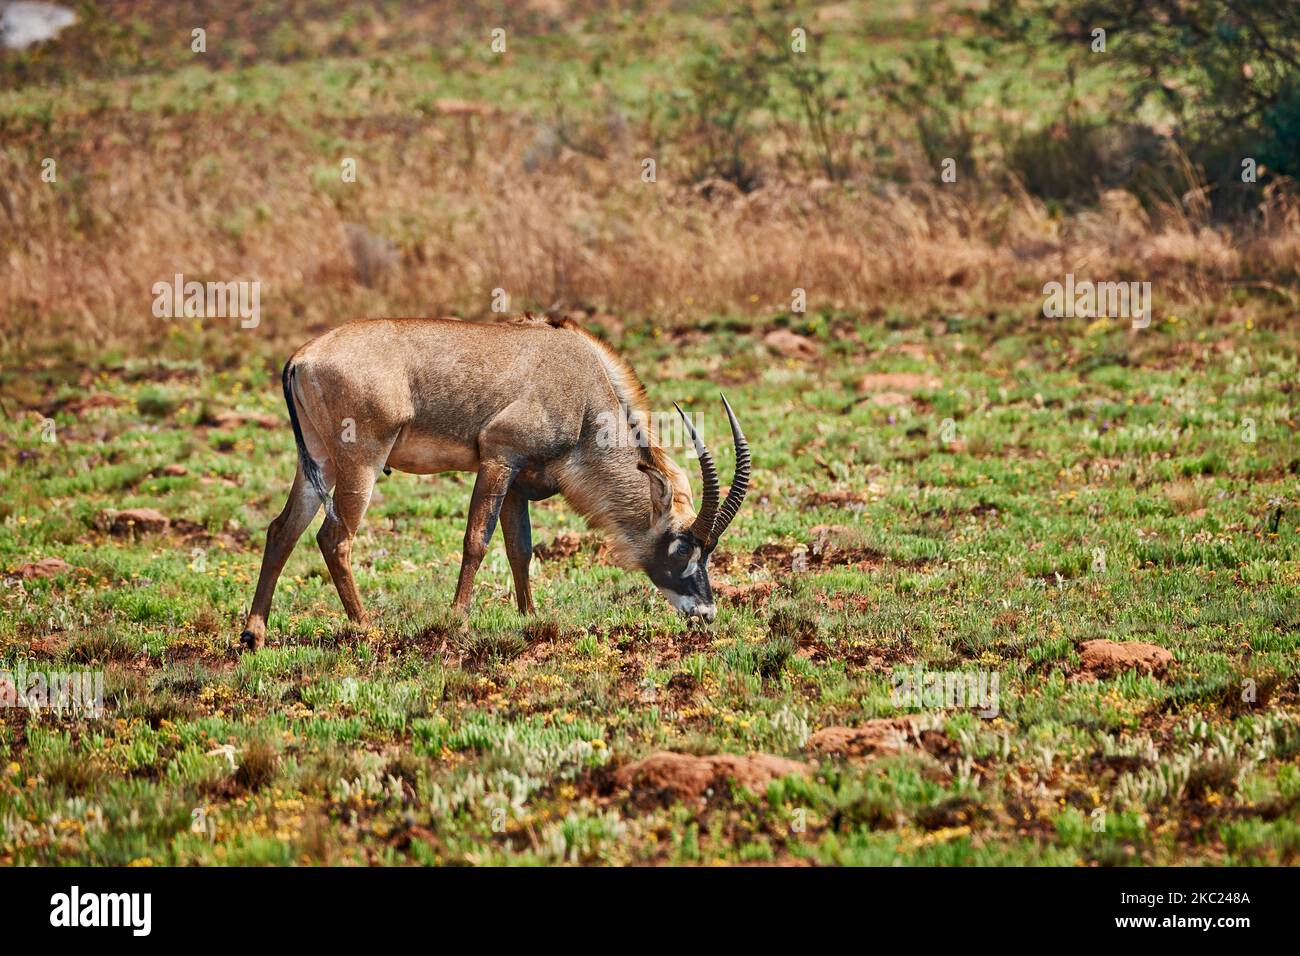 Antelope de Roan, Hippotragus equinus, plateau de Noika, Malawi, Afrique Banque D'Images